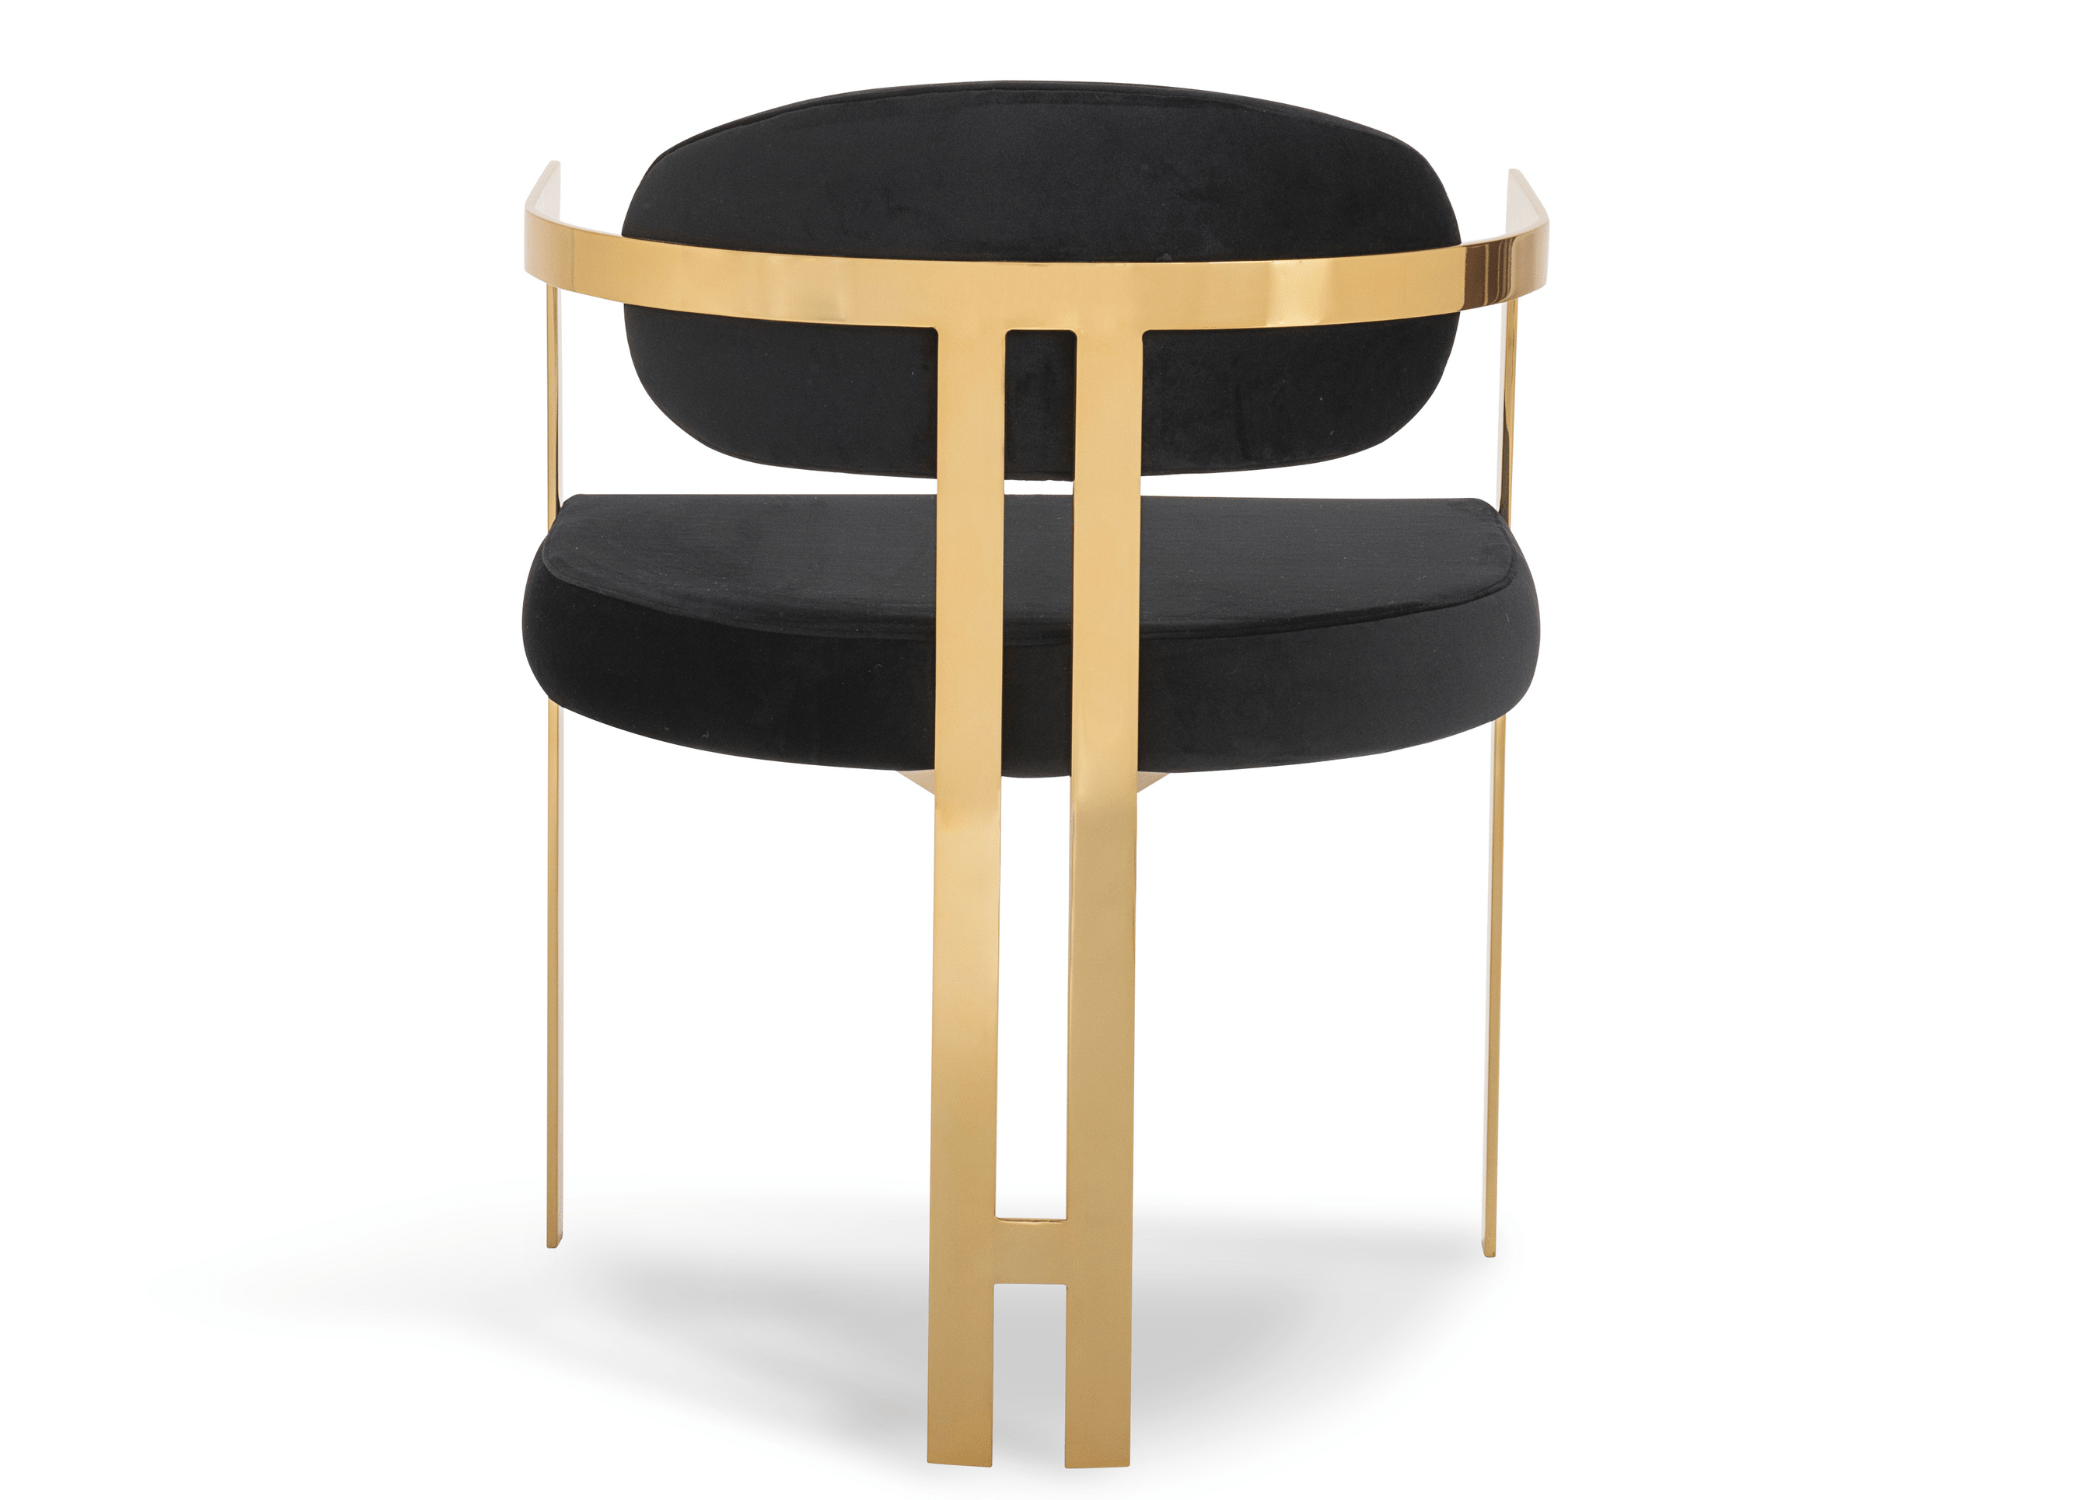 Design contemporâneo: Cadeira Calla, a escolha perfeita para escritórios sofisticados.